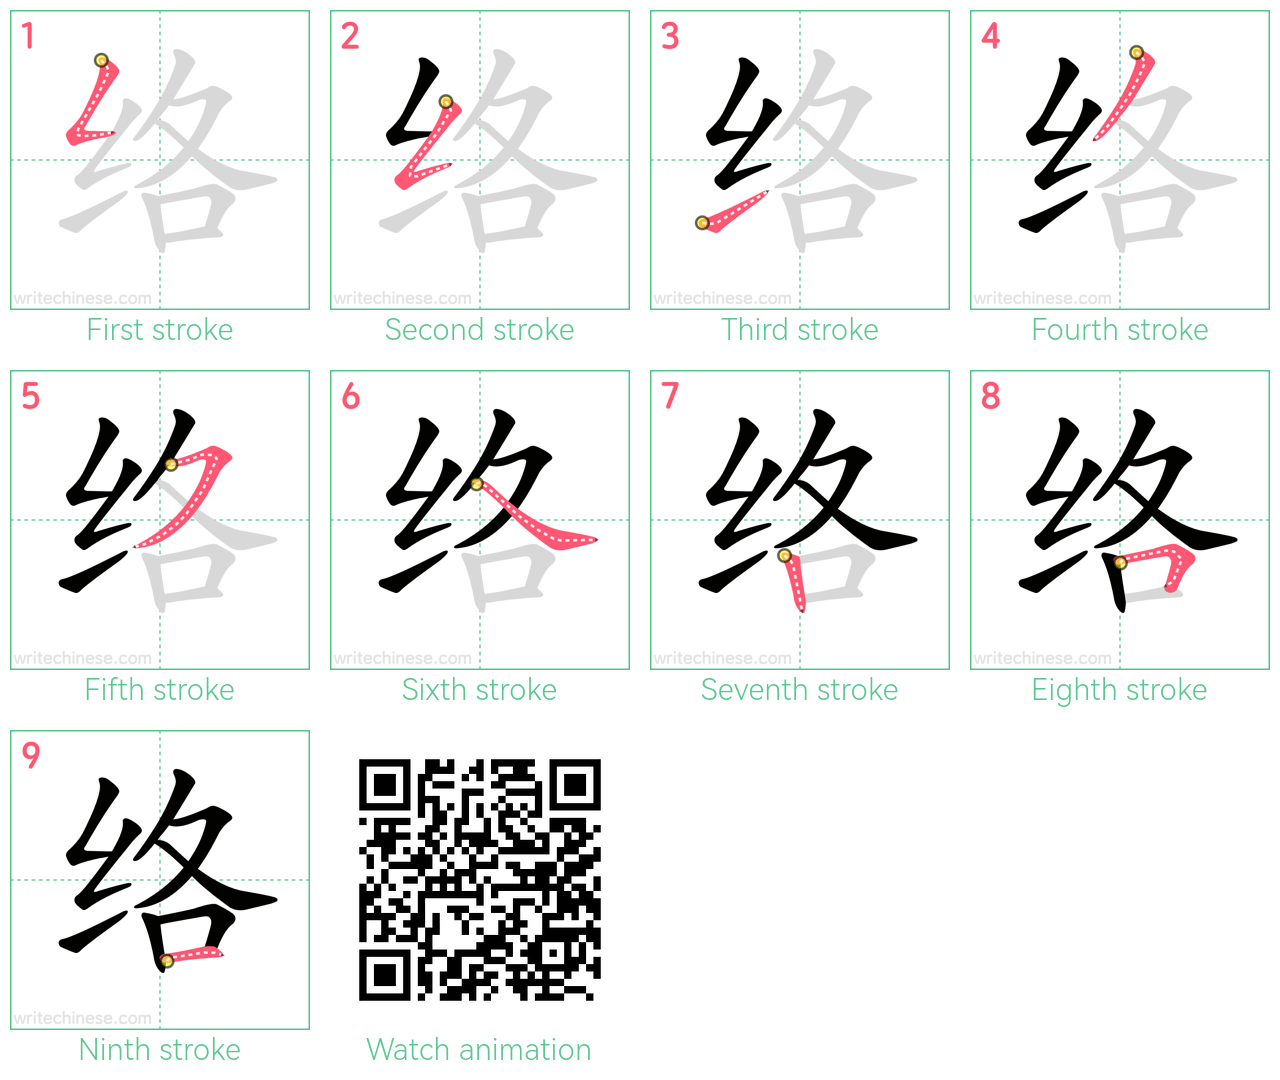 络 step-by-step stroke order diagrams